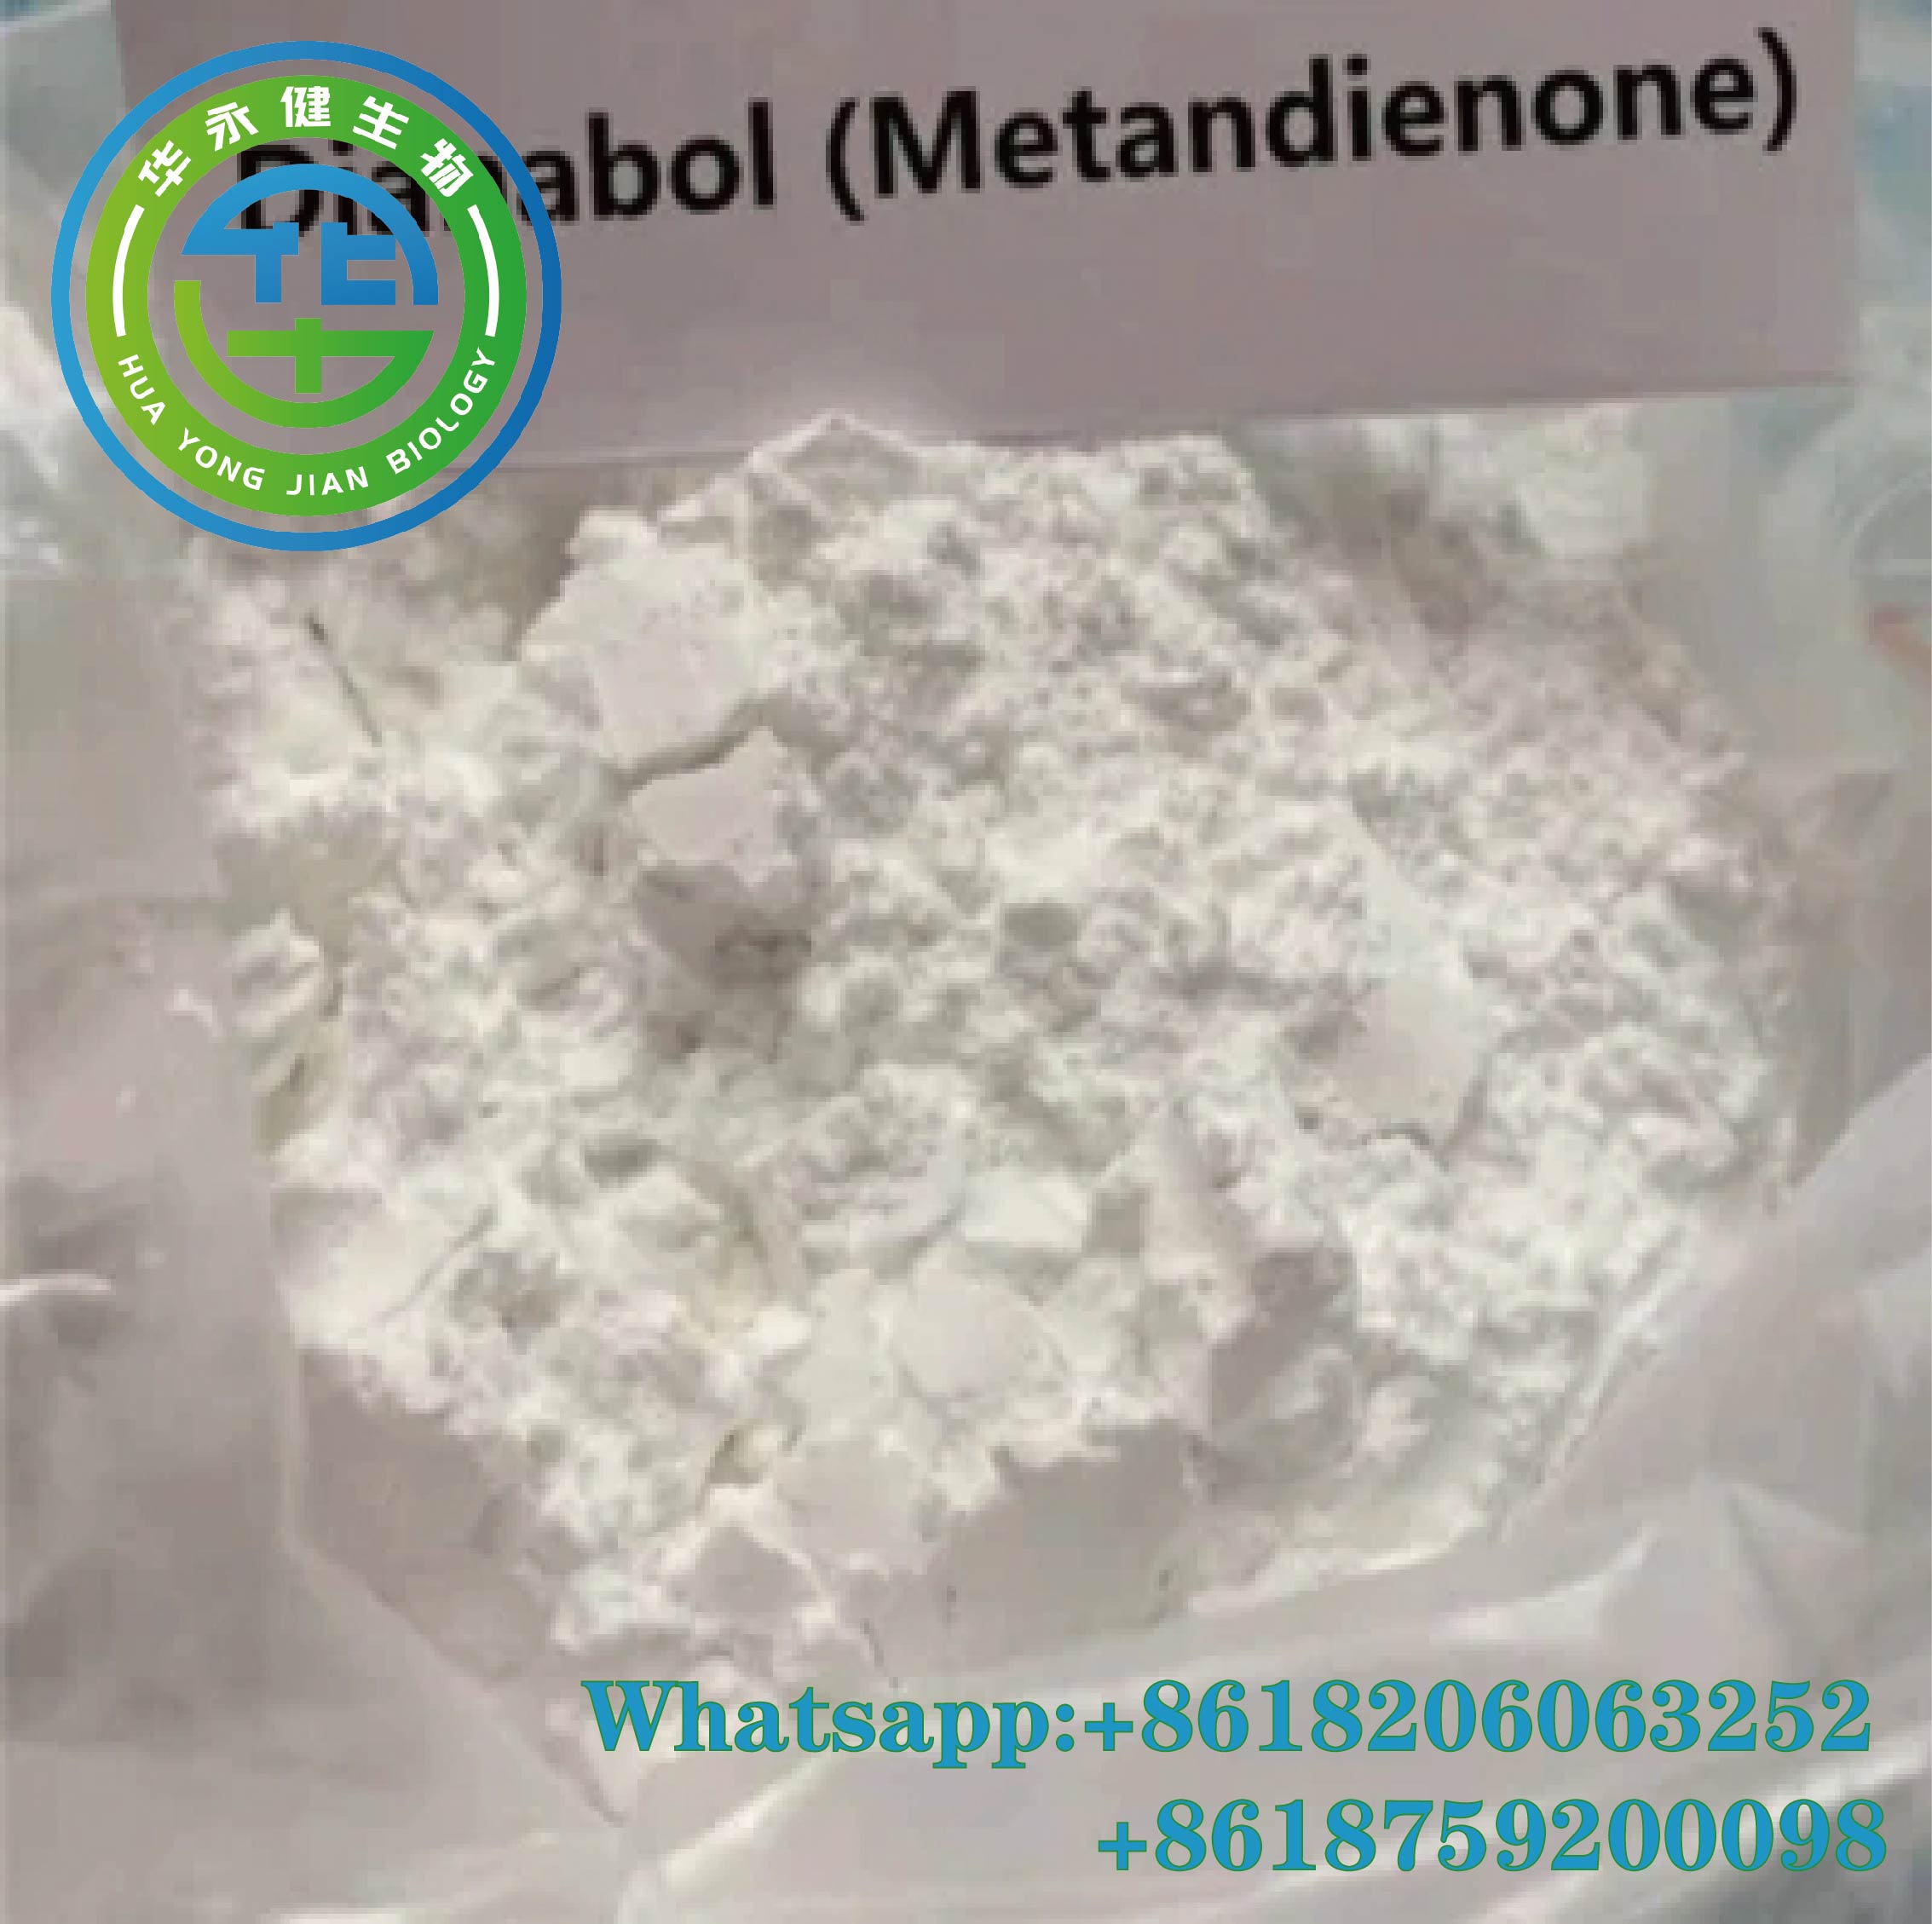 Dianabol (Methandrostenolone) kula da anabolic Properties na testosterone tare da m androgenicity a cikin wani azumi aiki.